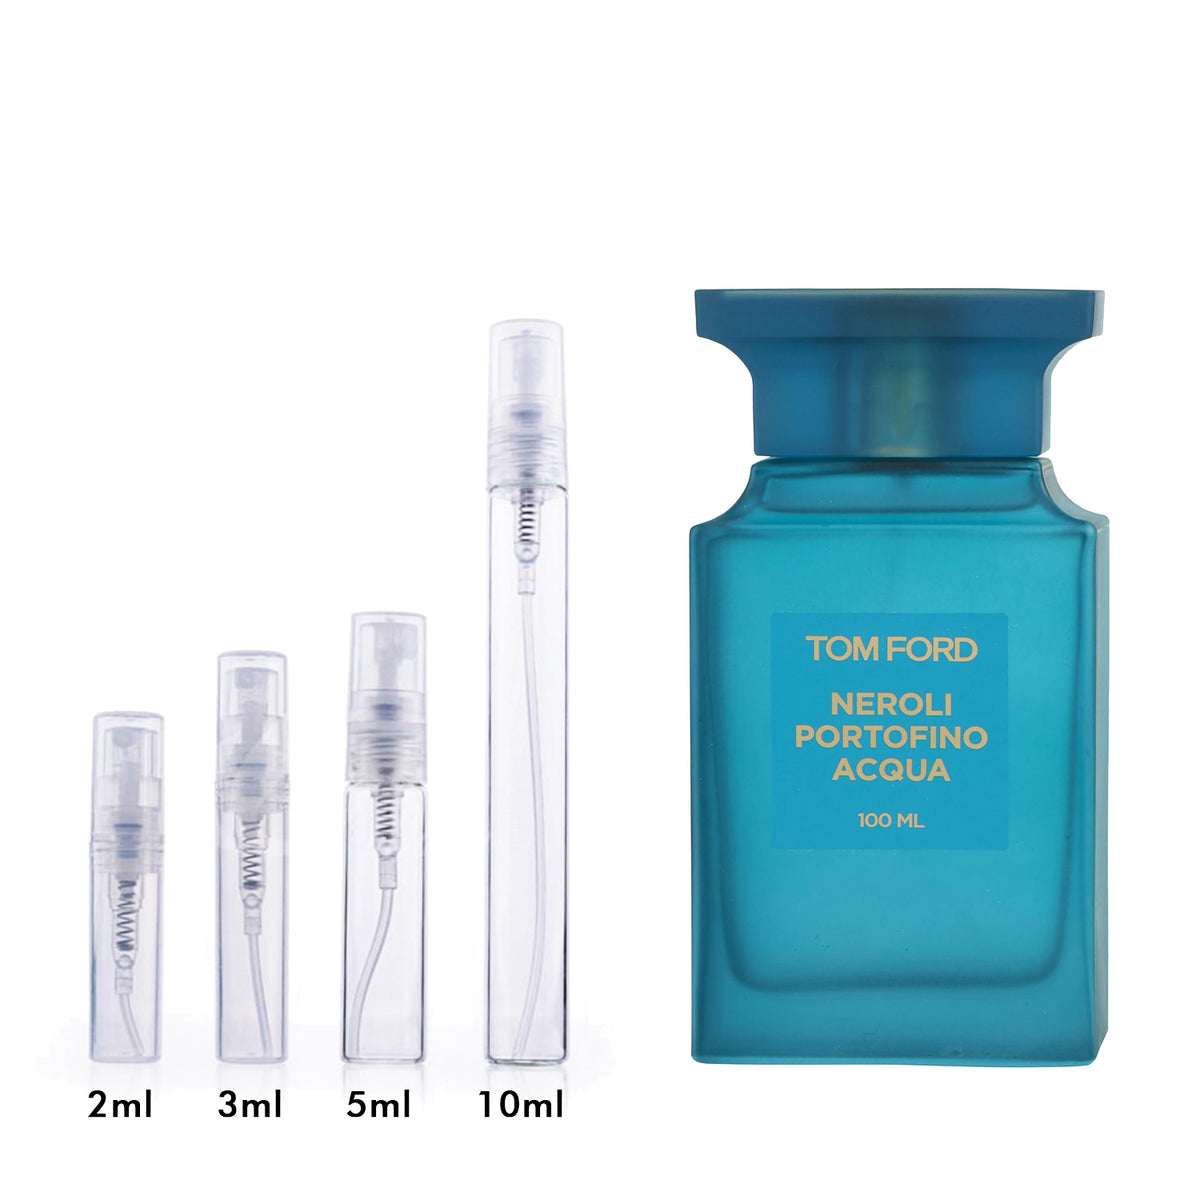 Tom Ford Neroli Portofino Acqua Eau de Toilette Unisex – DecantX Perfume Cologne Decant Fragrance